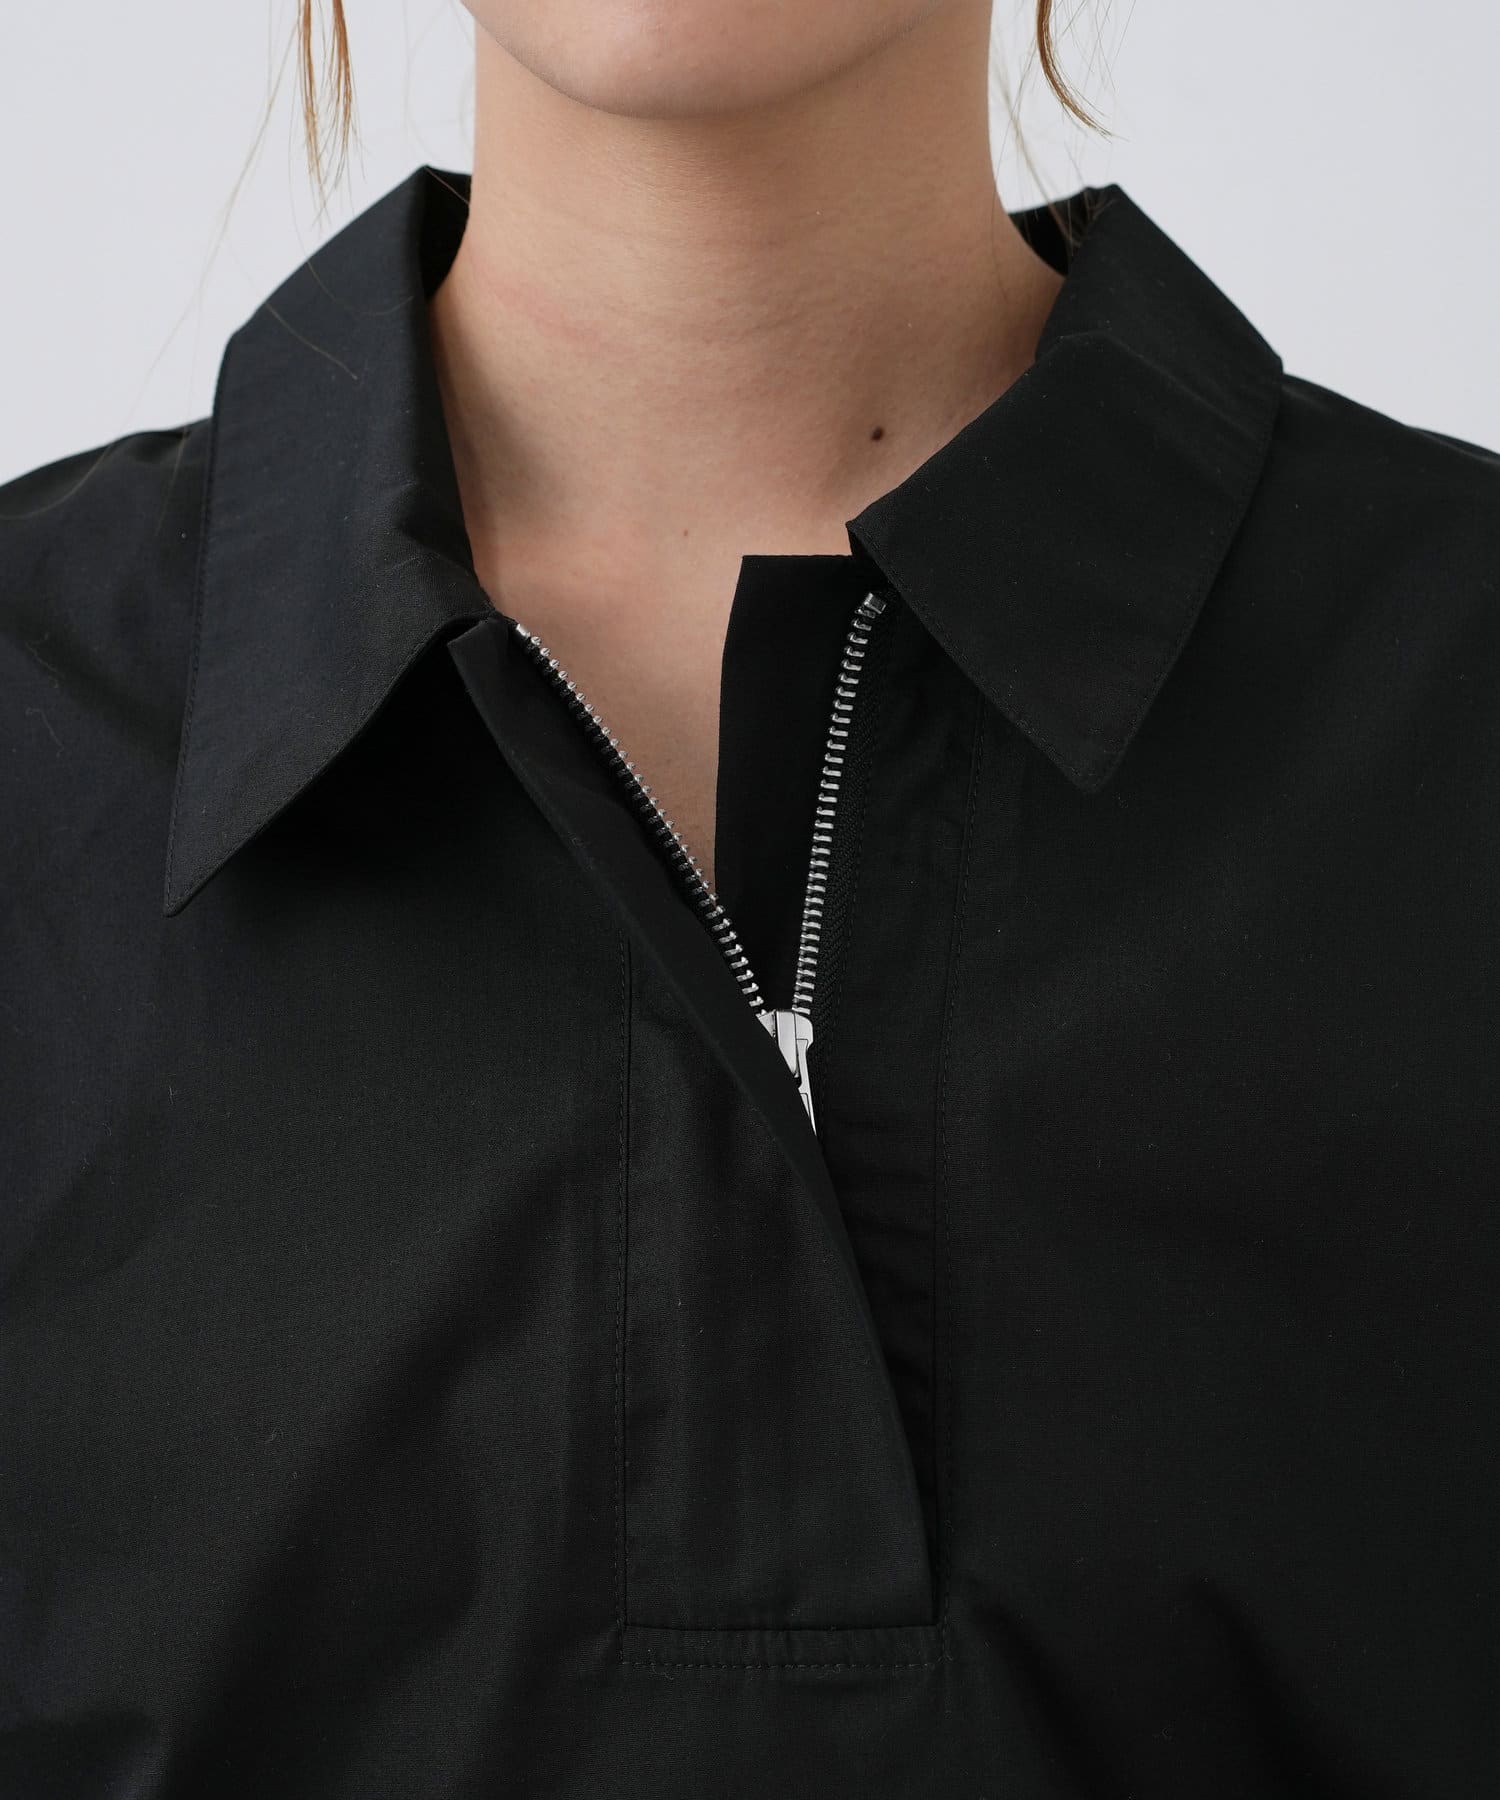 COLONY 2139(コロニー トゥーワンスリーナイン) ハーフジップ裾ドロスト半袖シャツ